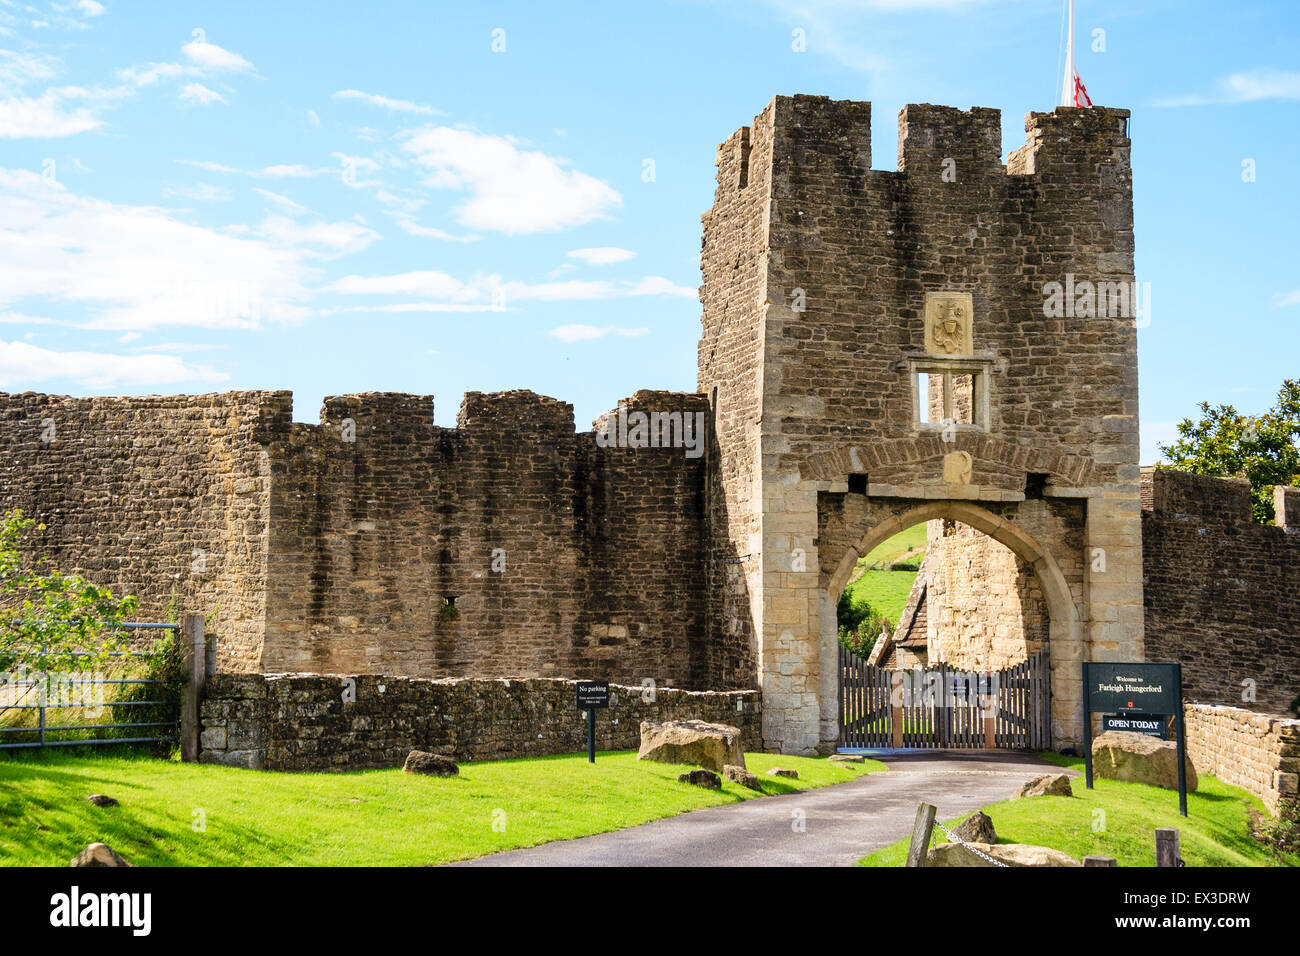 Les ruines de Farleigh Hungerford castle. Le 14e siècle est gardien, l'entrée principale du château avec le mur rideau extérieur et bleu ciel. Banque D'Images